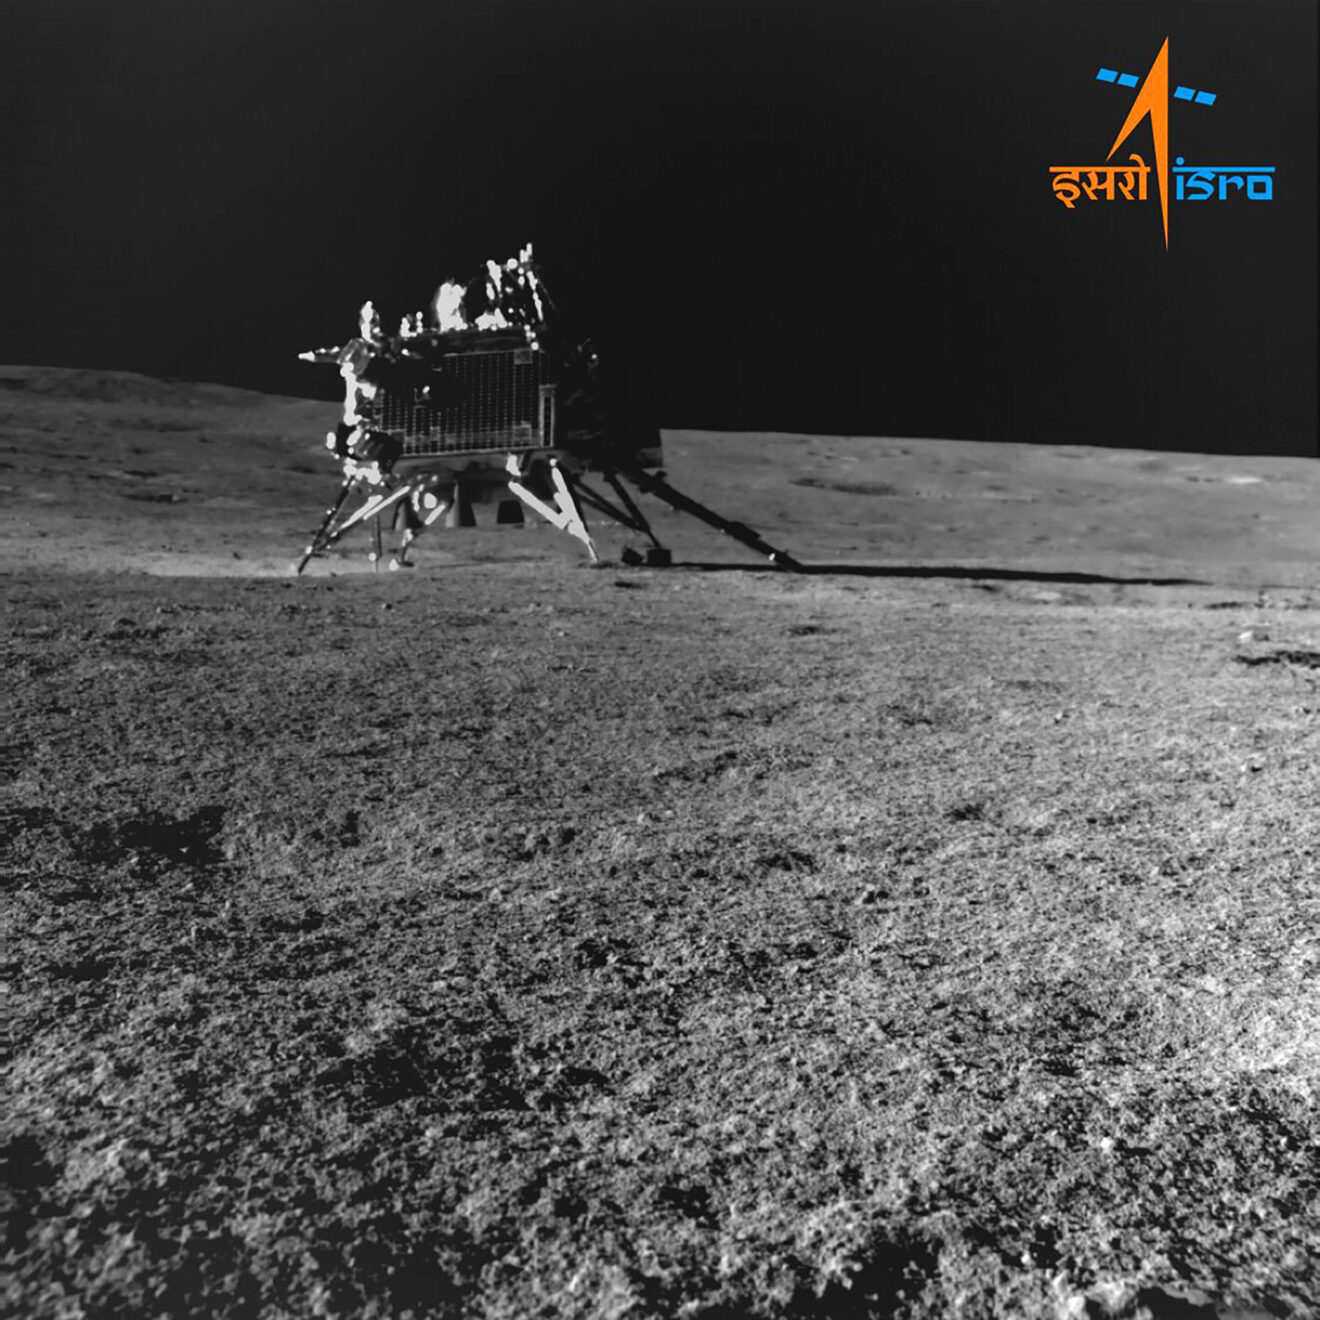 De Vikram-lander en Pragyan-rover op de maan zijn in slaaptoestand gebracht